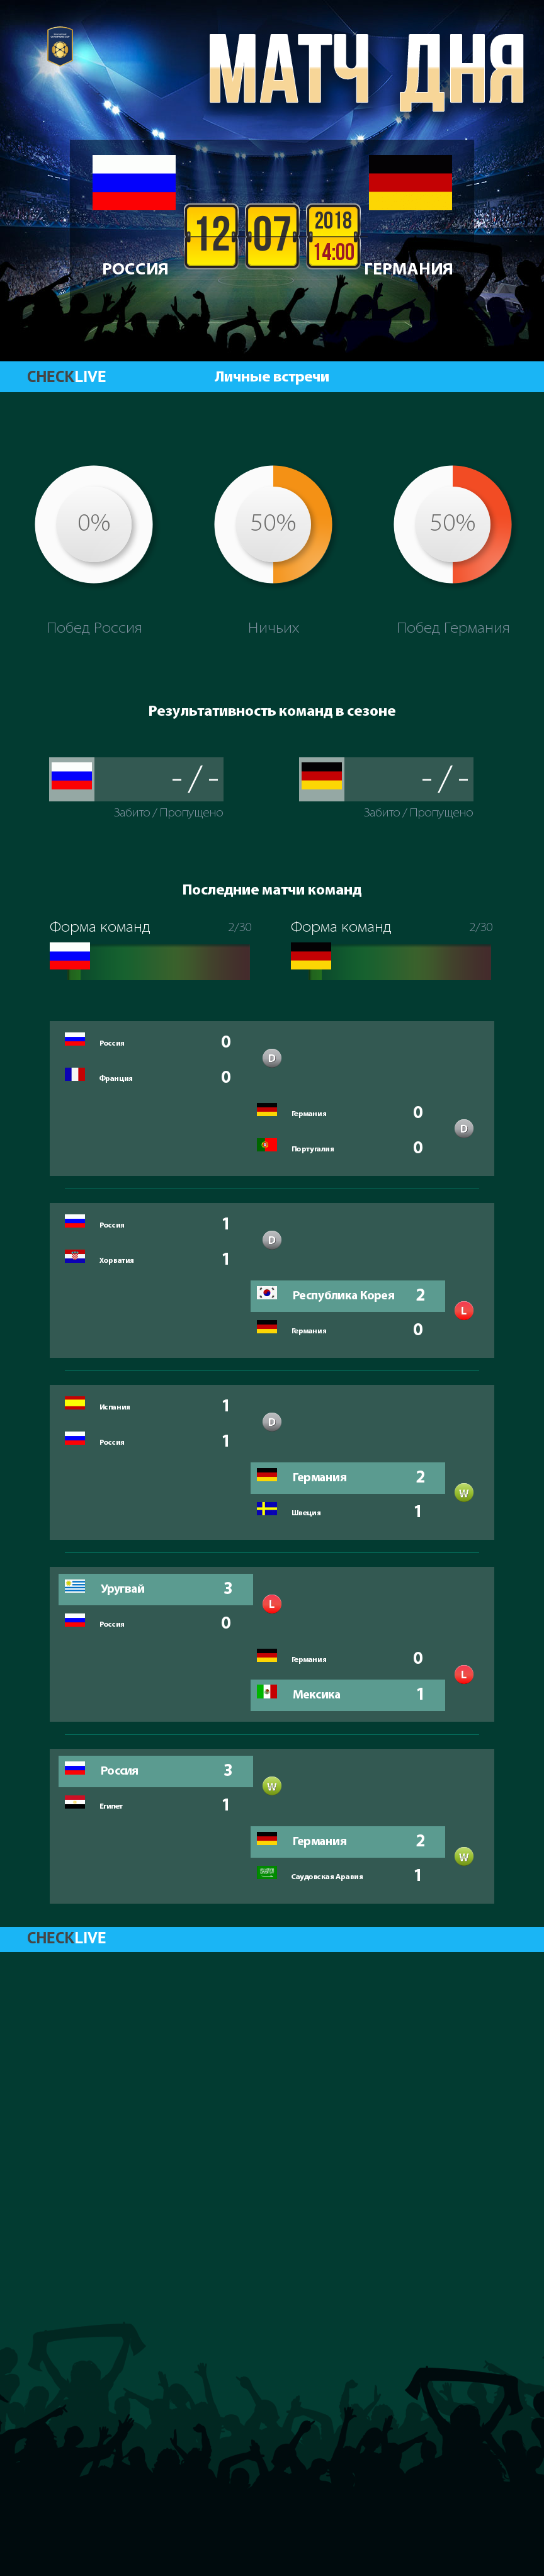 Инфографика Россия и Германия матч дня 12.07.2018